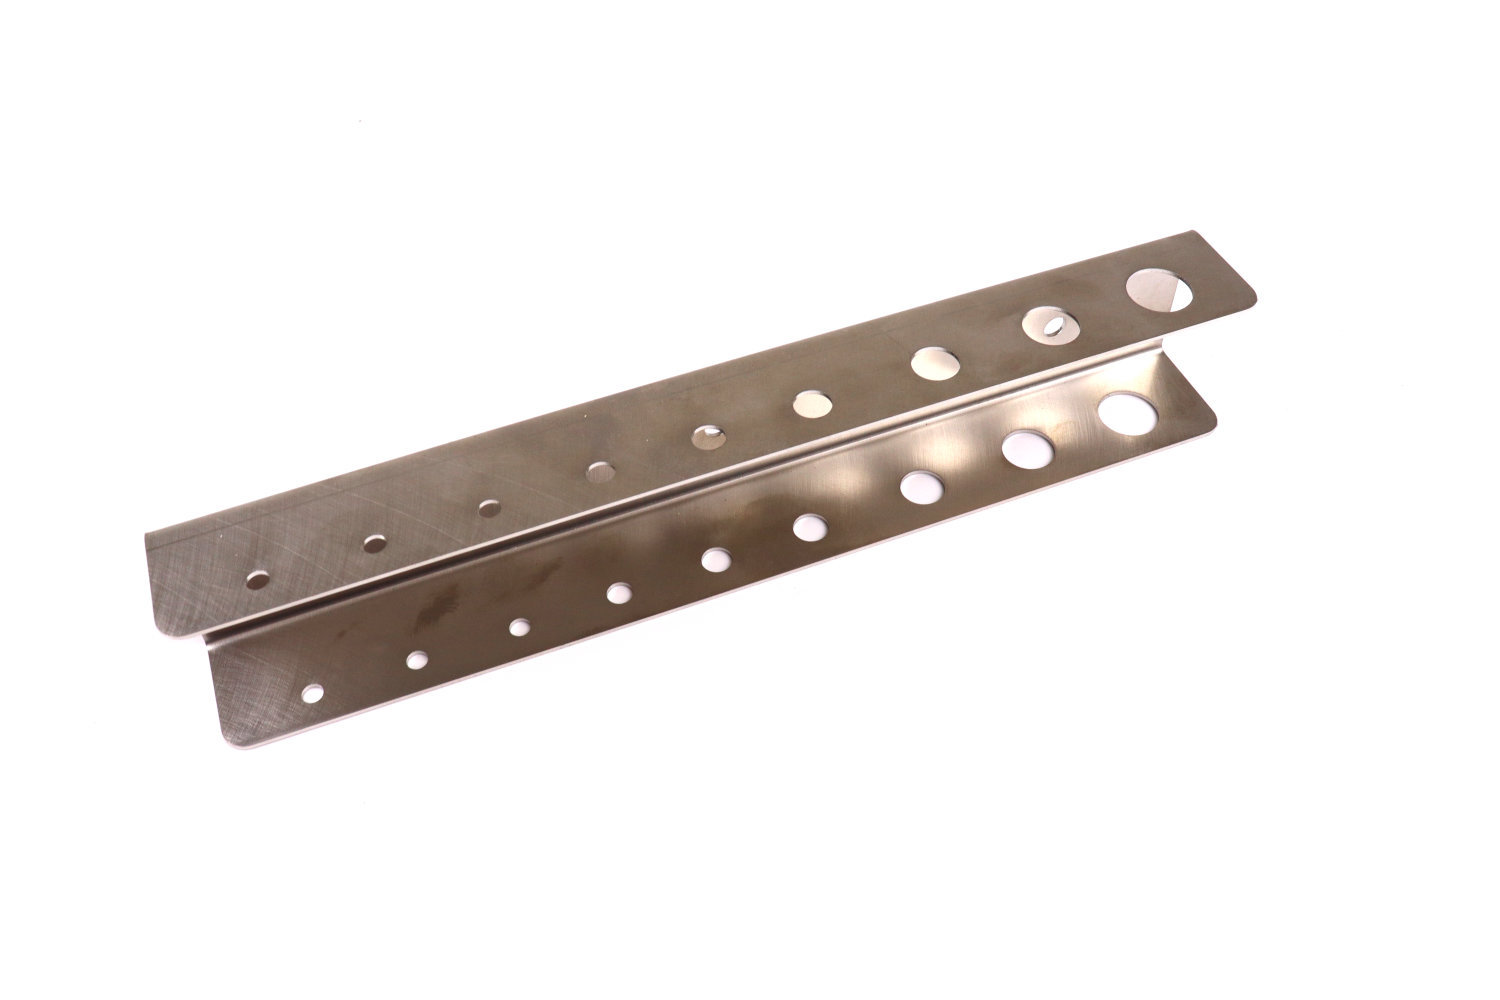 Stainless steel holder for Allen torx keys